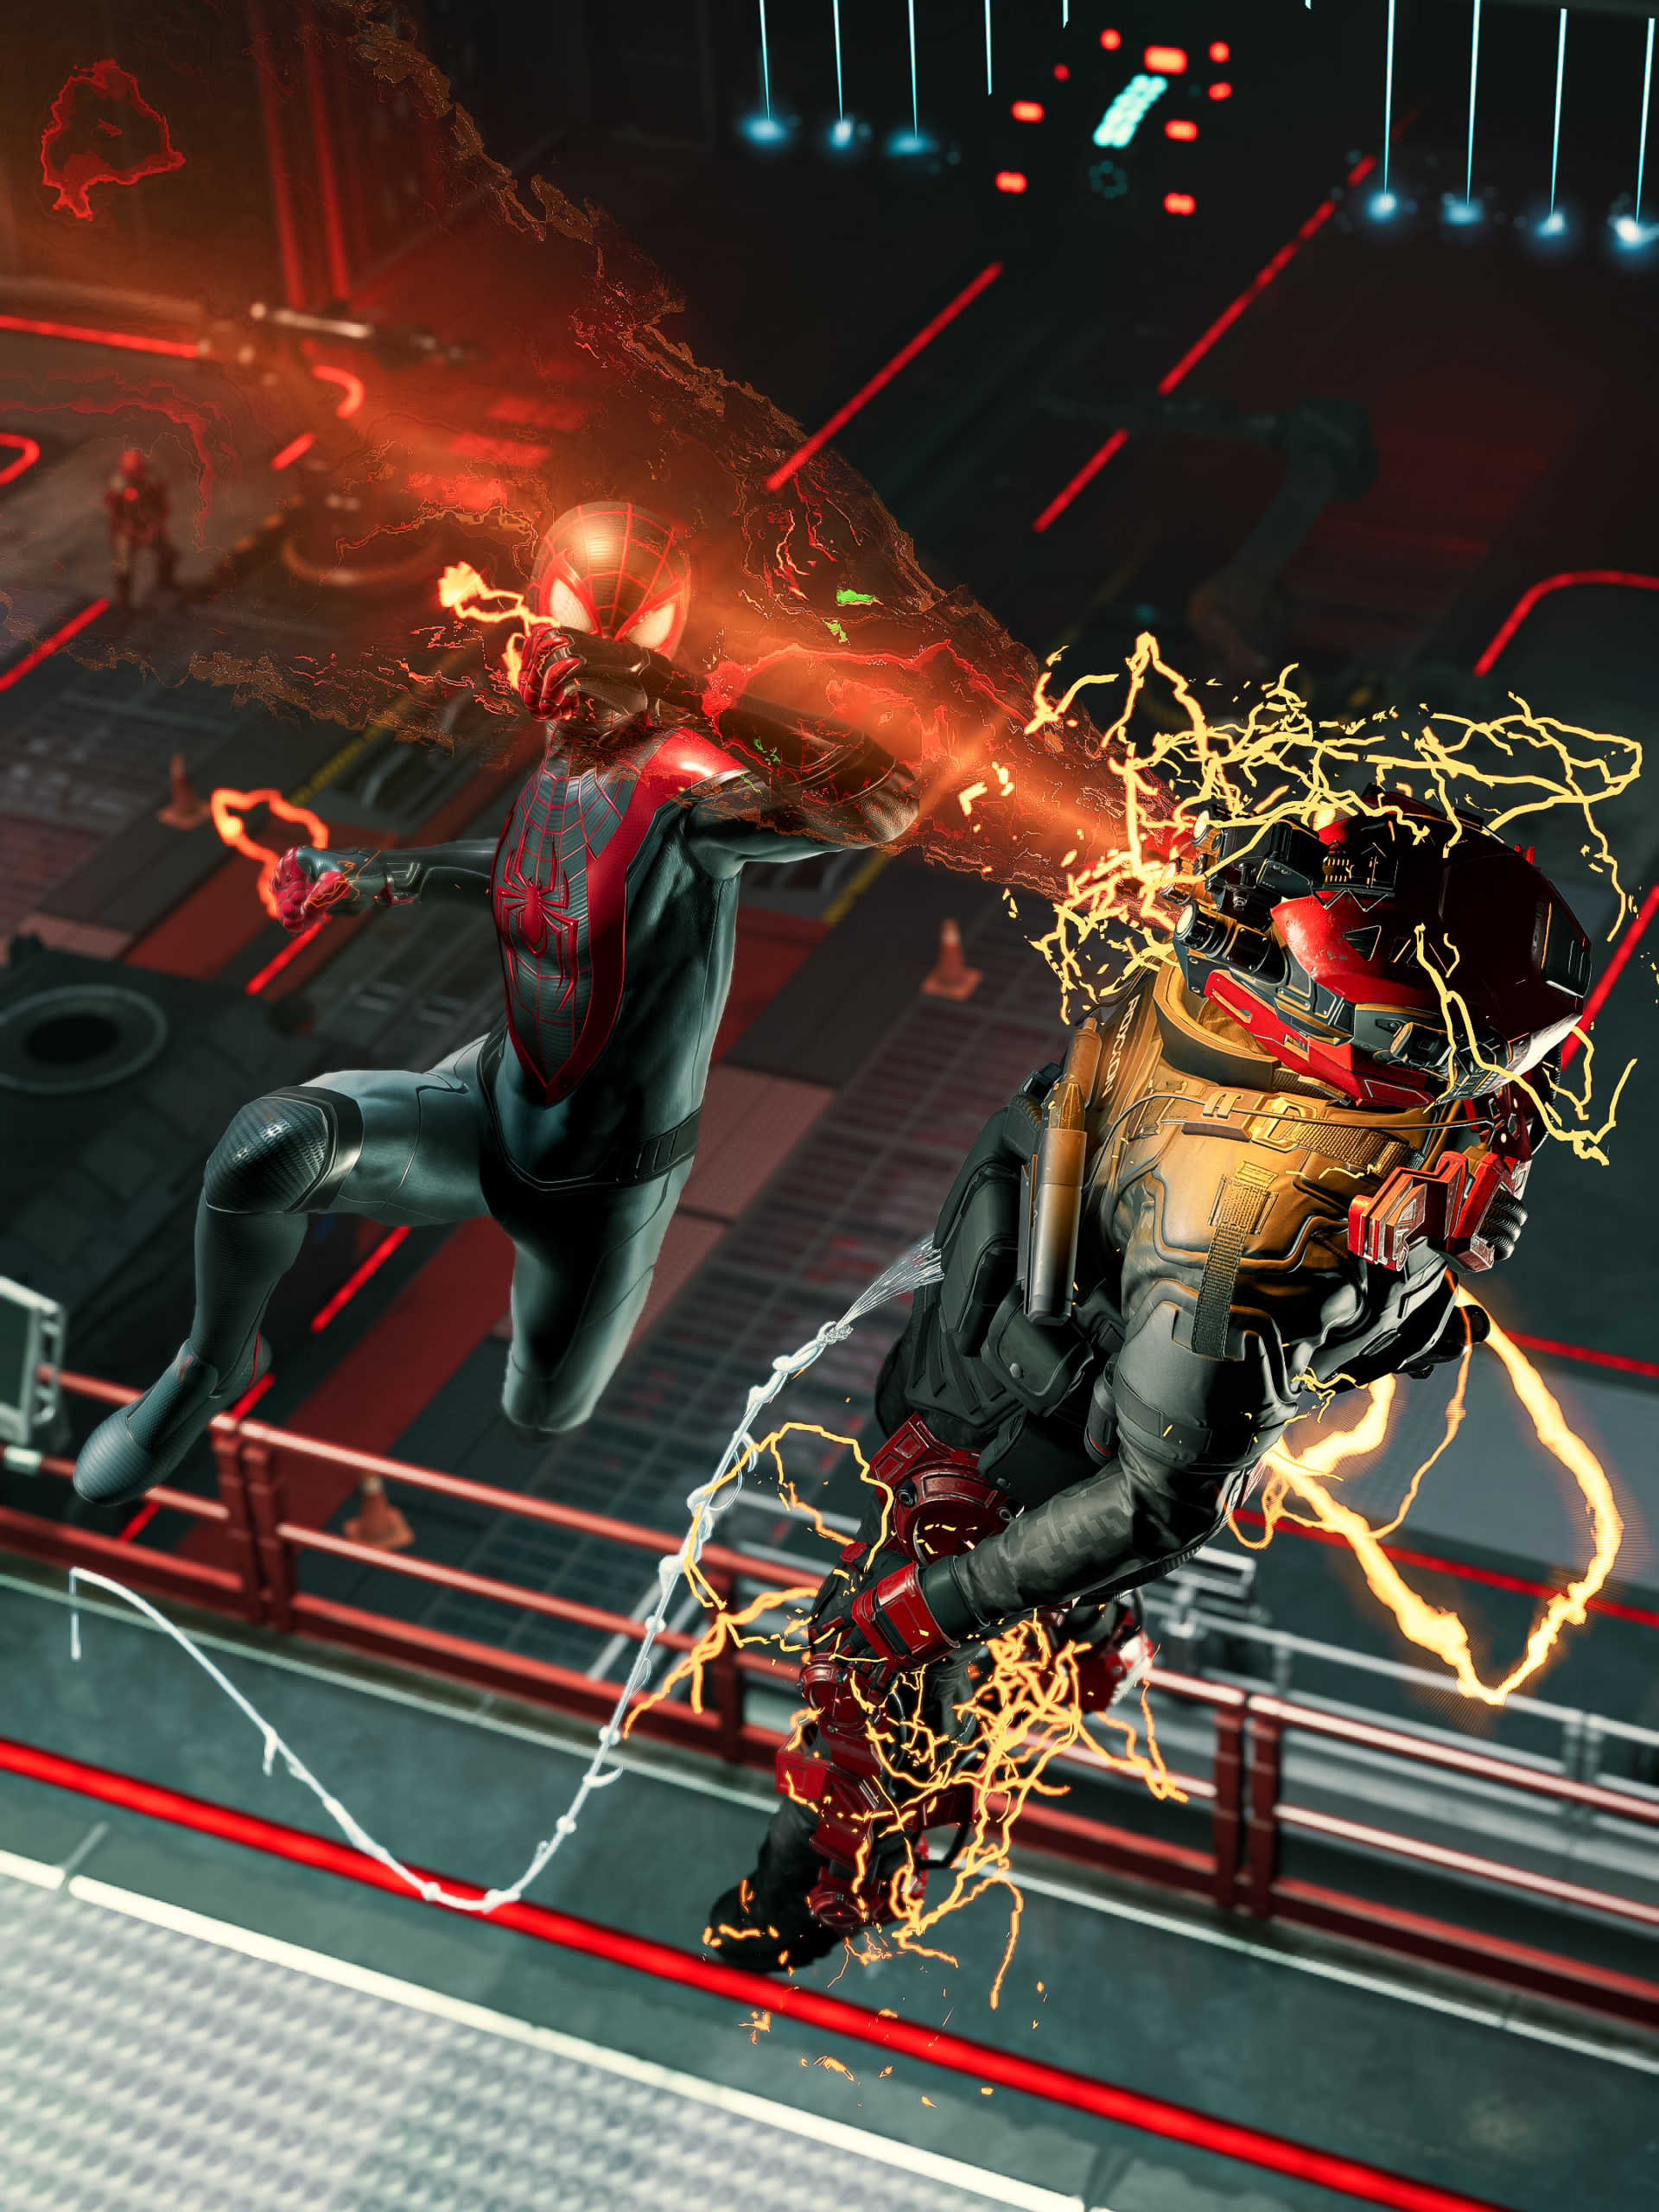 Marvel's Spider-Man: Miles Morales para PC ganha data de lançamento